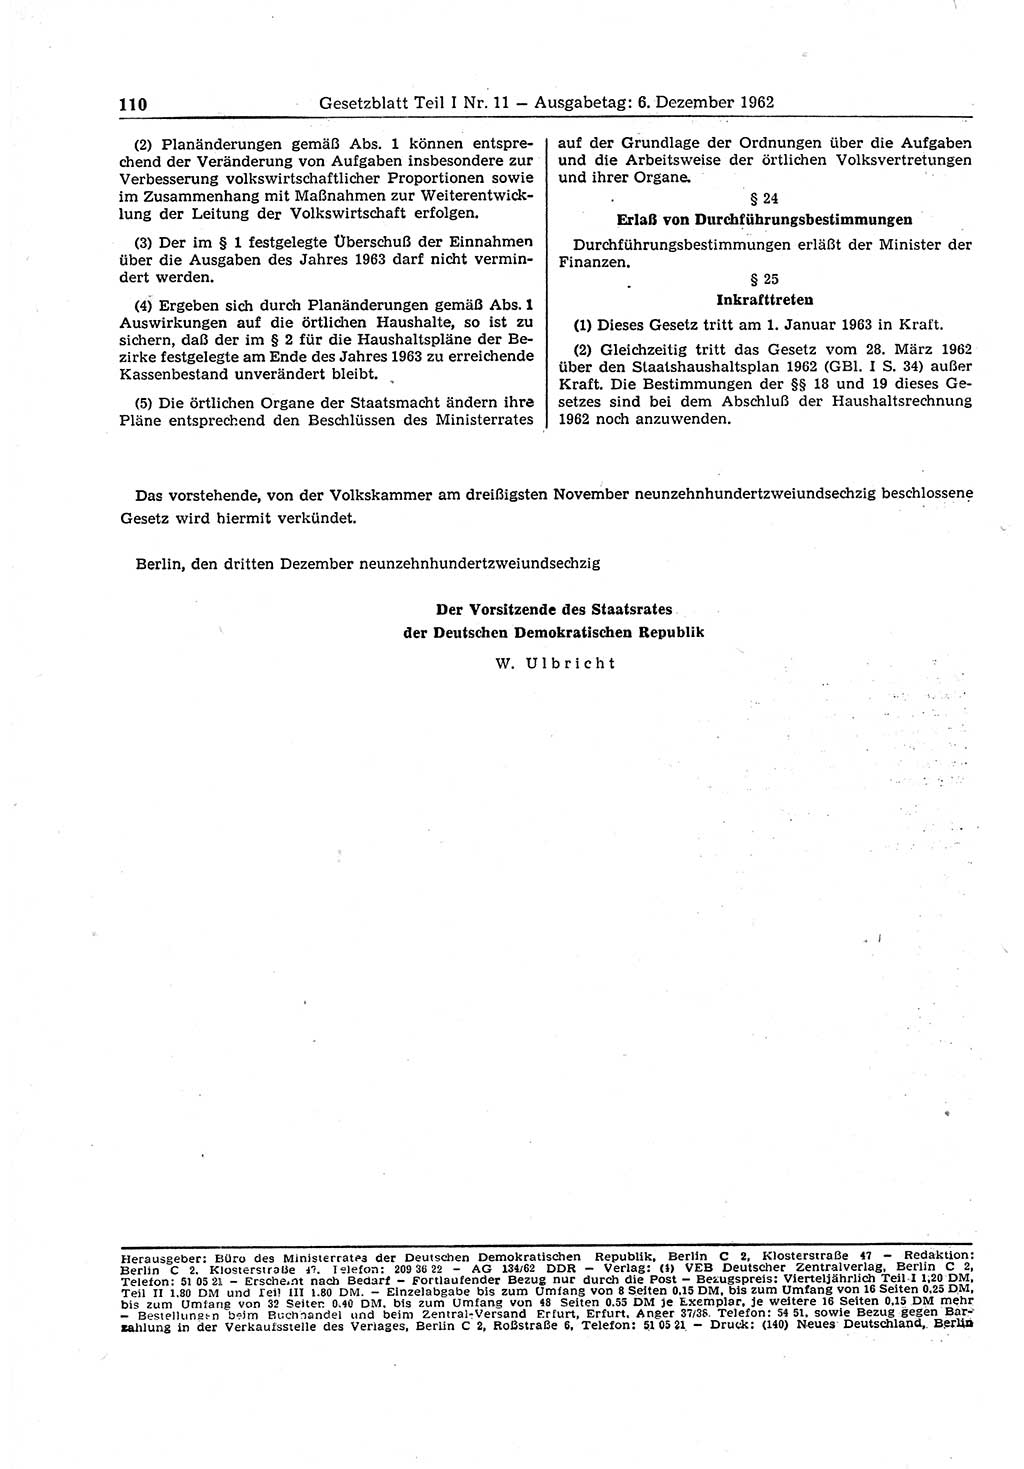 Gesetzblatt (GBl.) der Deutschen Demokratischen Republik (DDR) Teil Ⅰ 1962, Seite 110 (GBl. DDR Ⅰ 1962, S. 110)